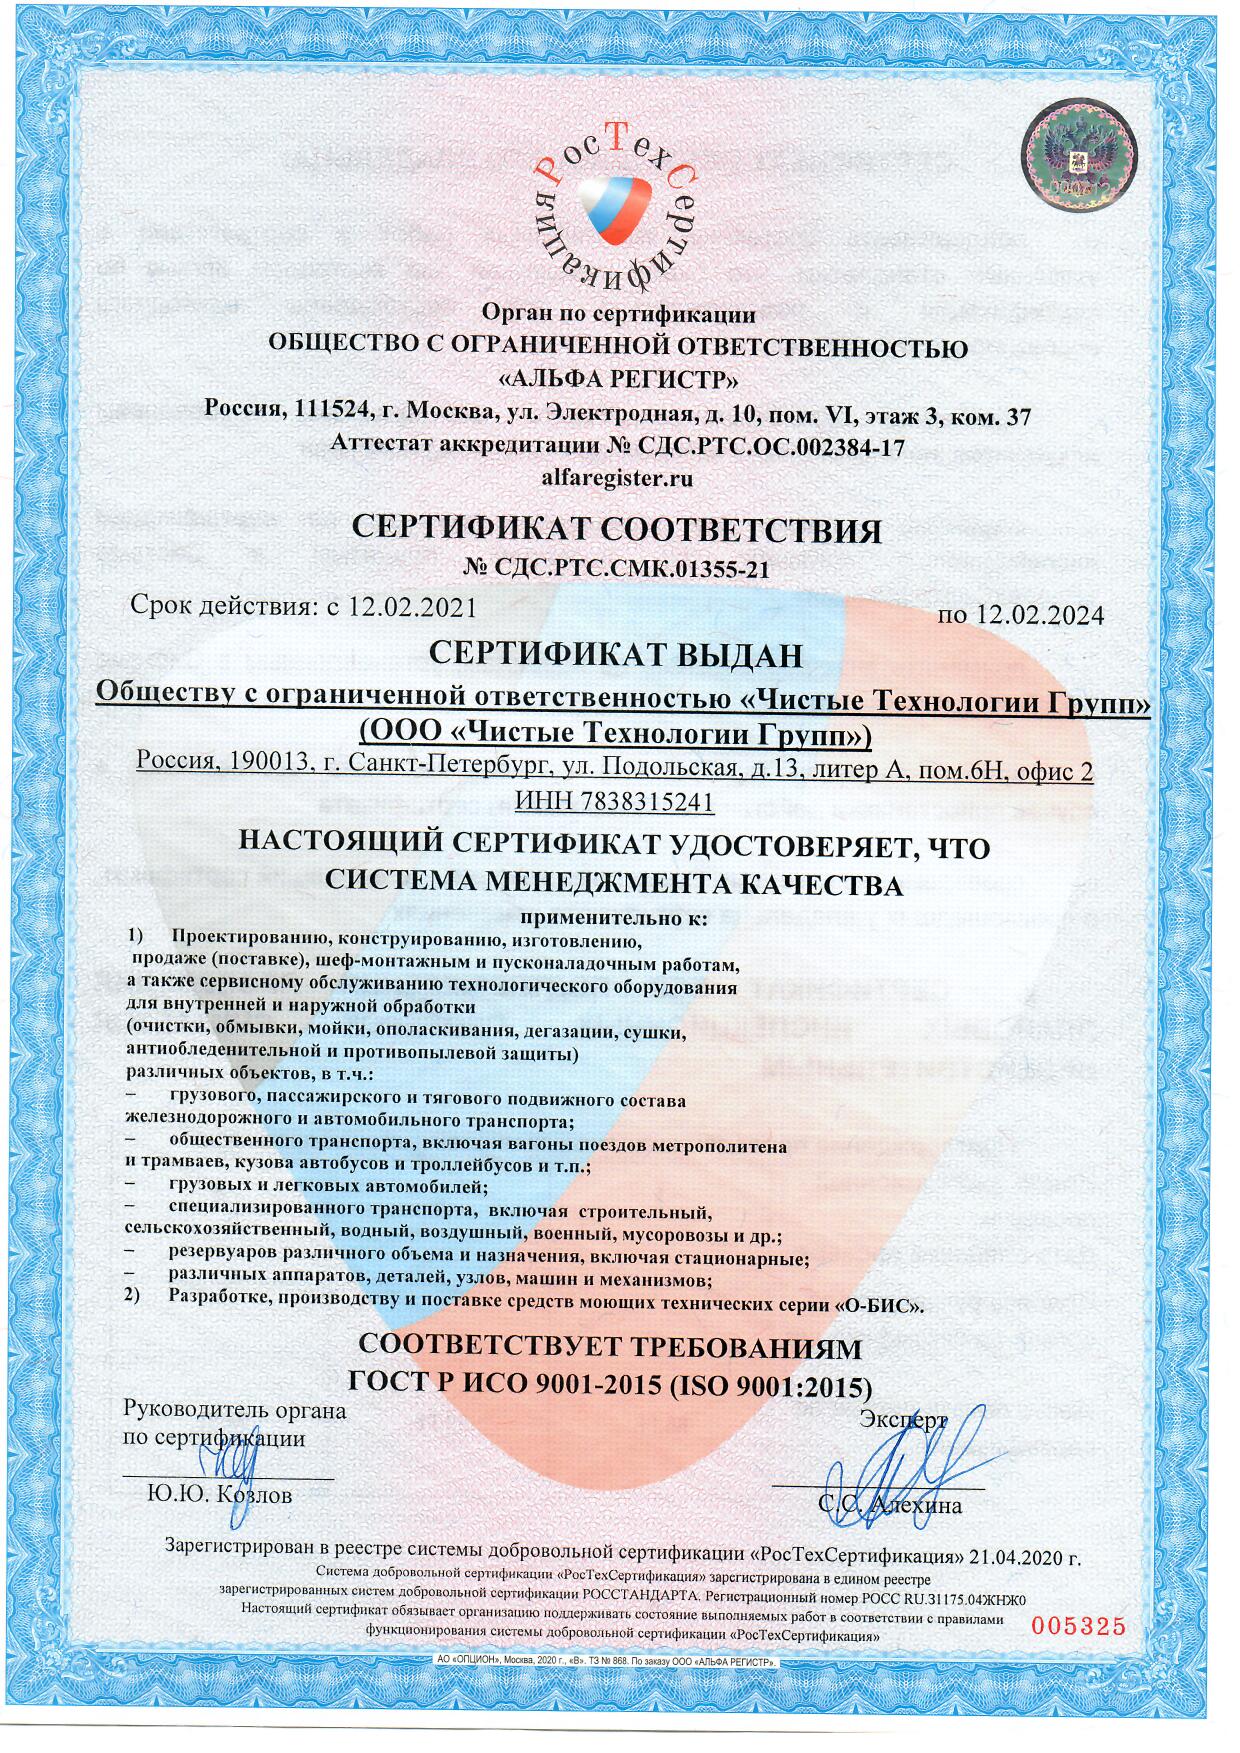 Сертификат СМК по ISO 9001 подтверждает надежность CTG, мы гарантируем выполнение взятых на себя обязательств